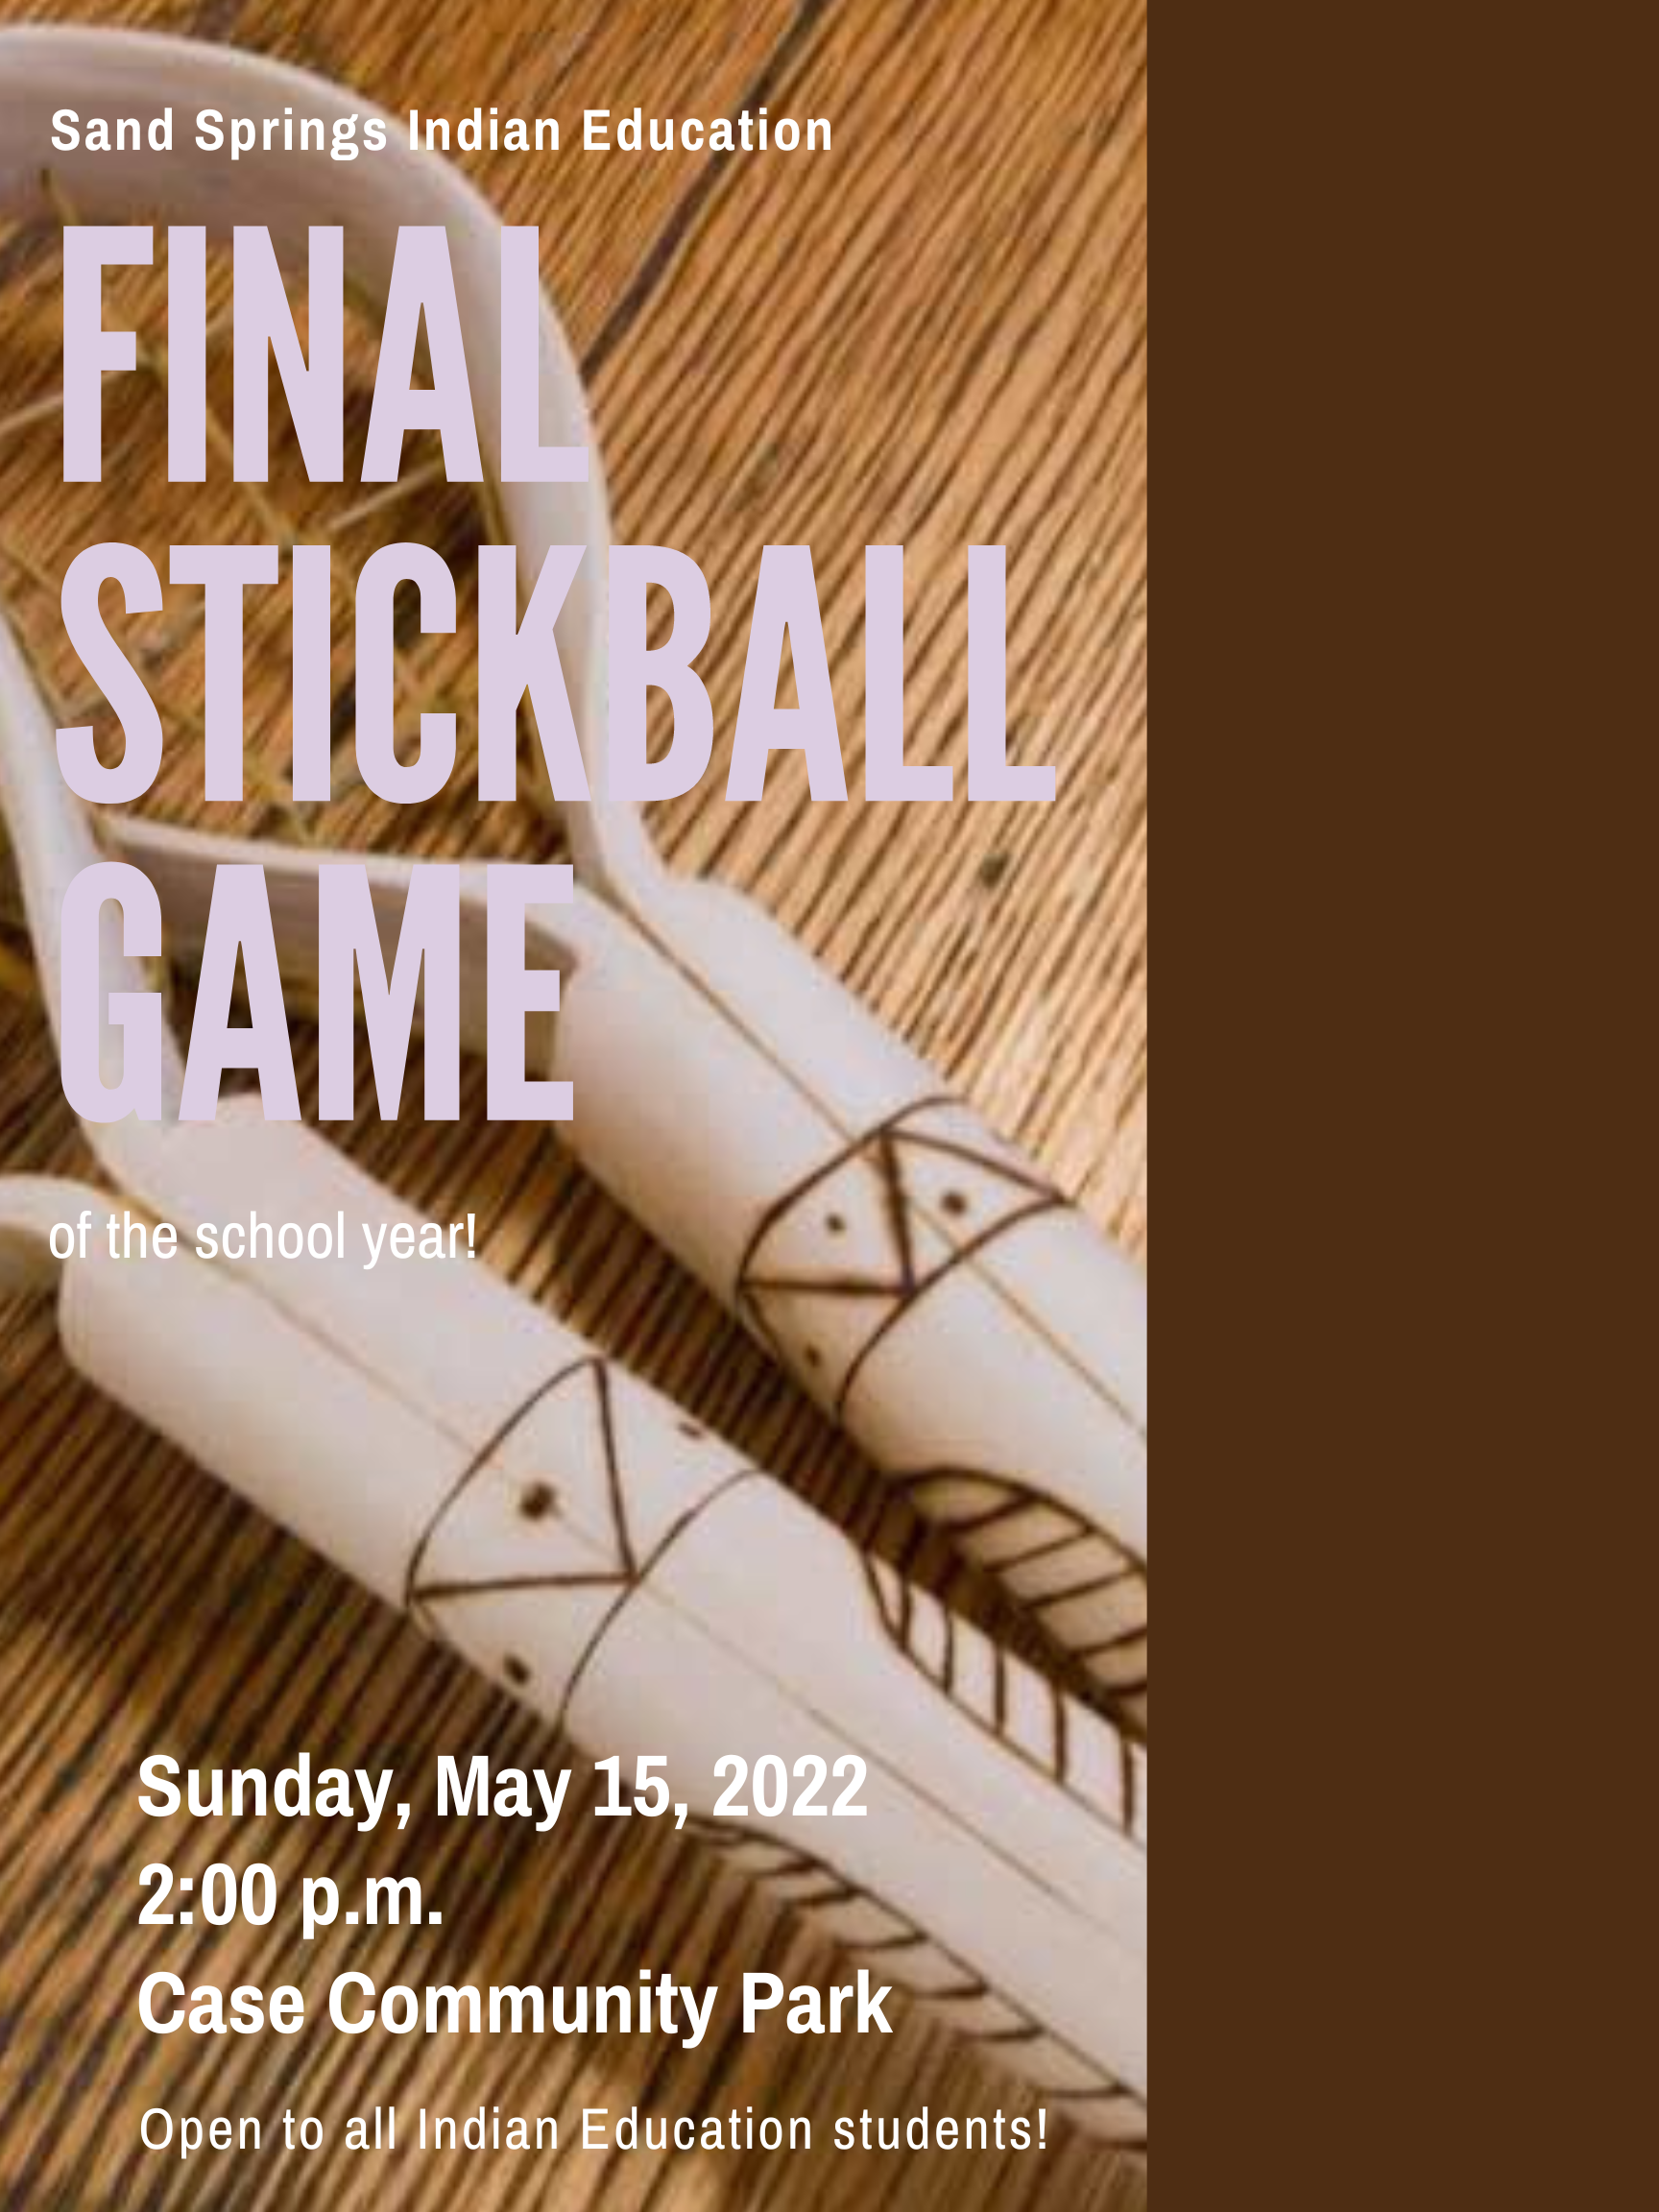 Final stickball game